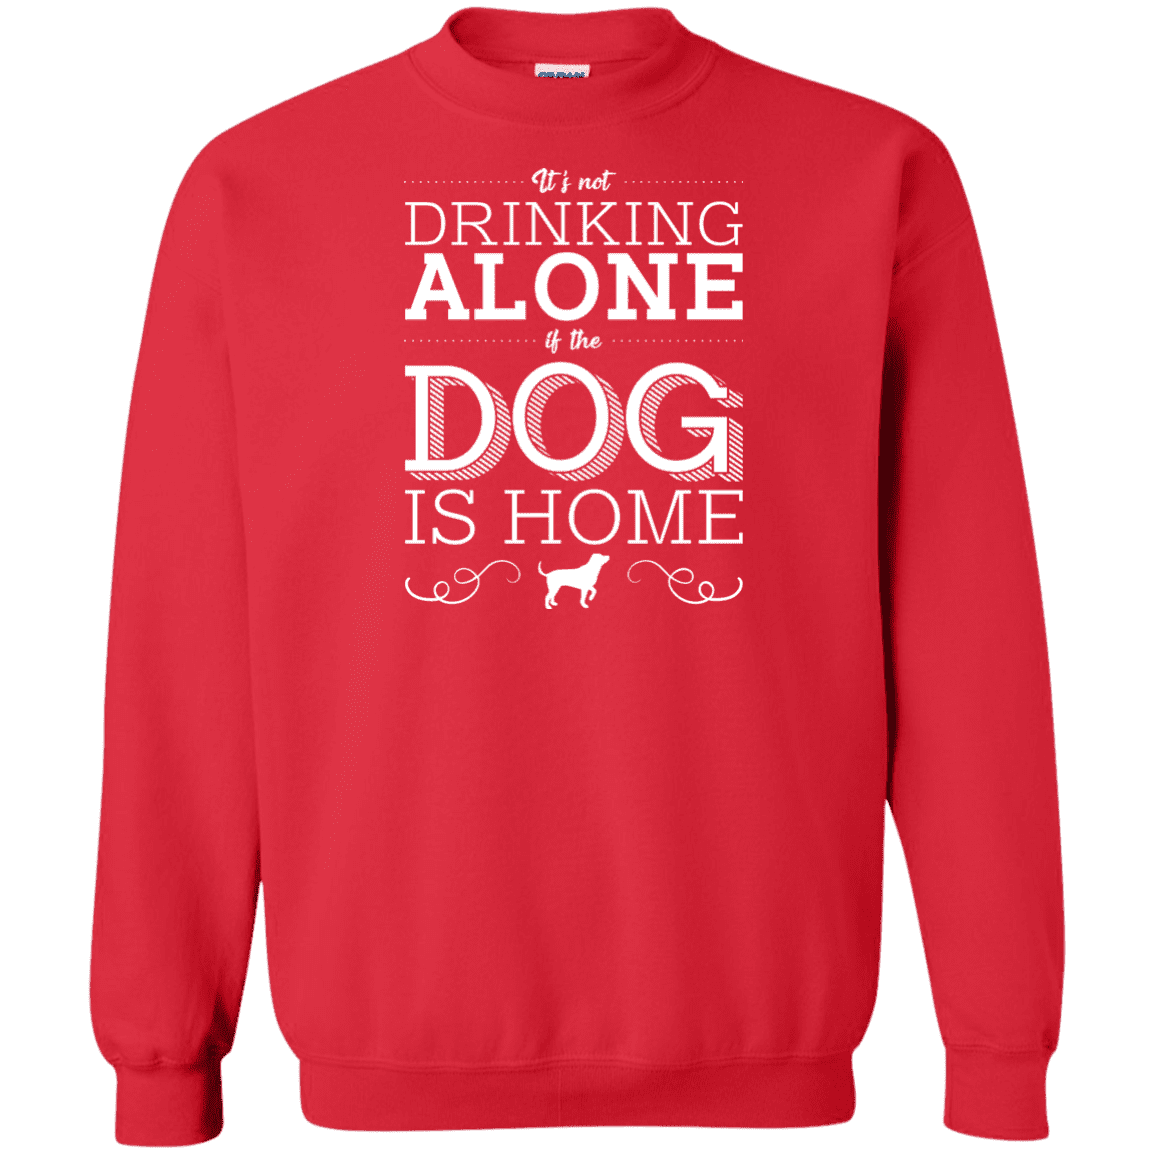 It's Not Drinking Alone - Sweatshirt.